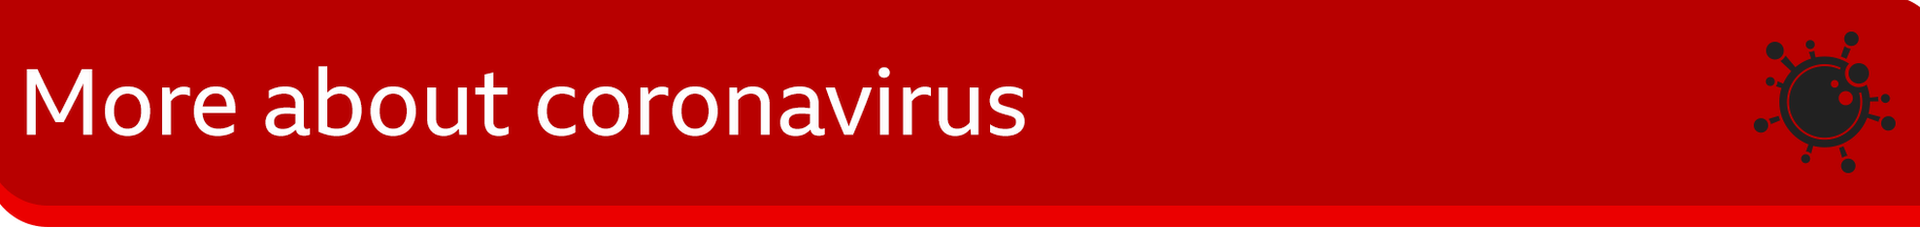 Изображение баннера с надписью «Подробнее о коронавирусе»